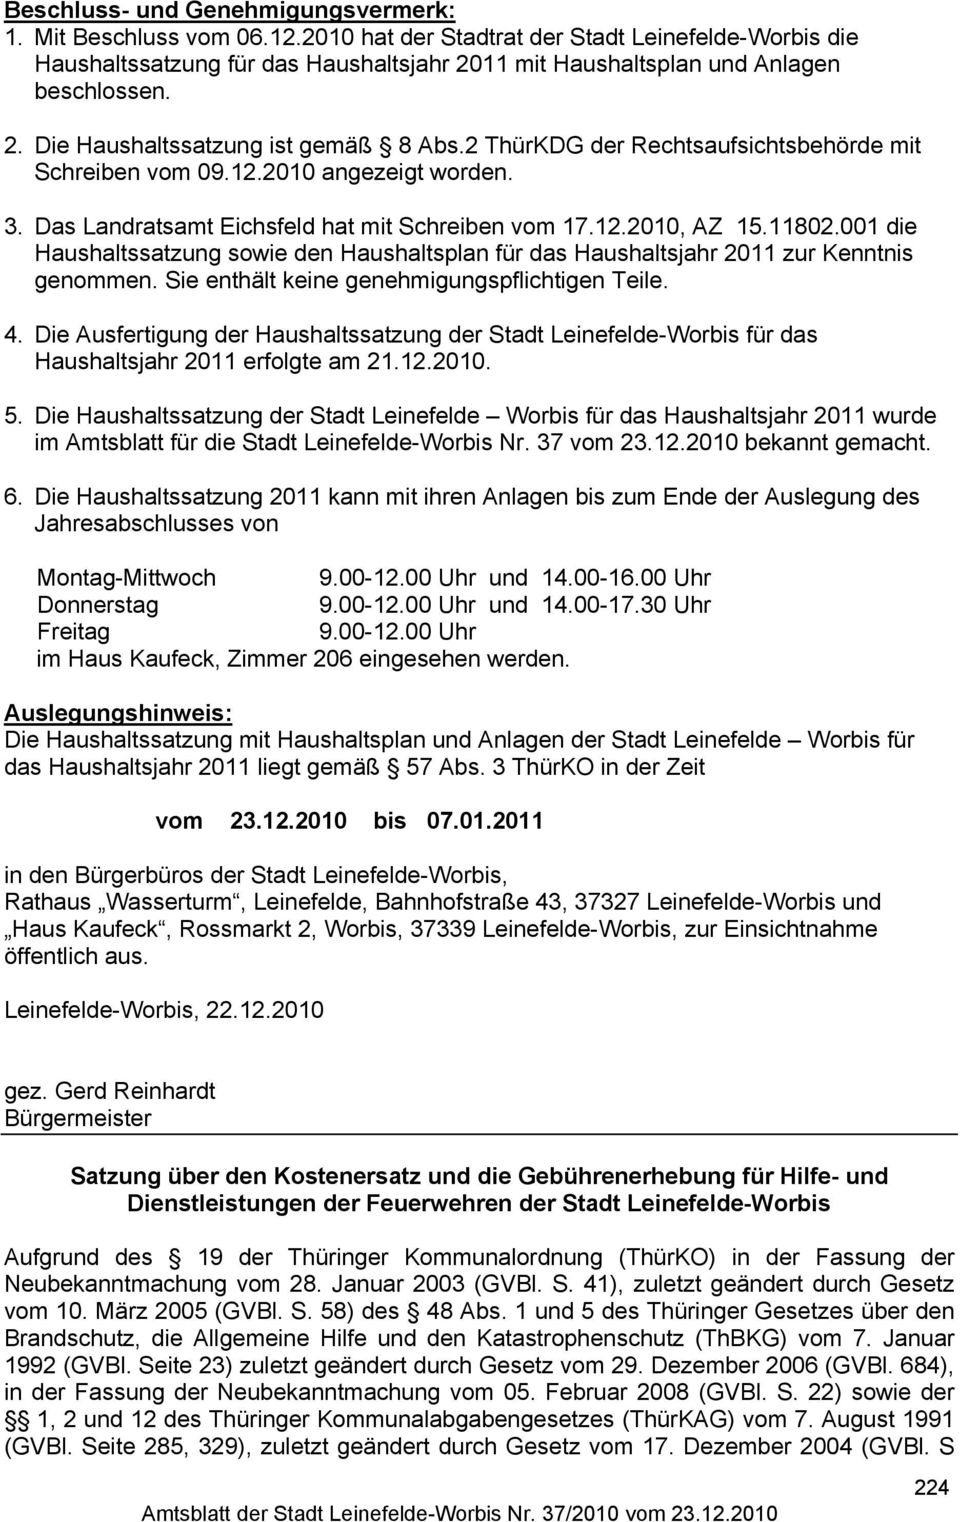 2 ThürKDG der Rechtsaufsichtsbehörde mit Schreiben vom 09.12.2010 angezeigt worden. 3. Das Landratsamt Eichsfeld hat mit Schreiben vom 17.12.2010, AZ 15.11802.